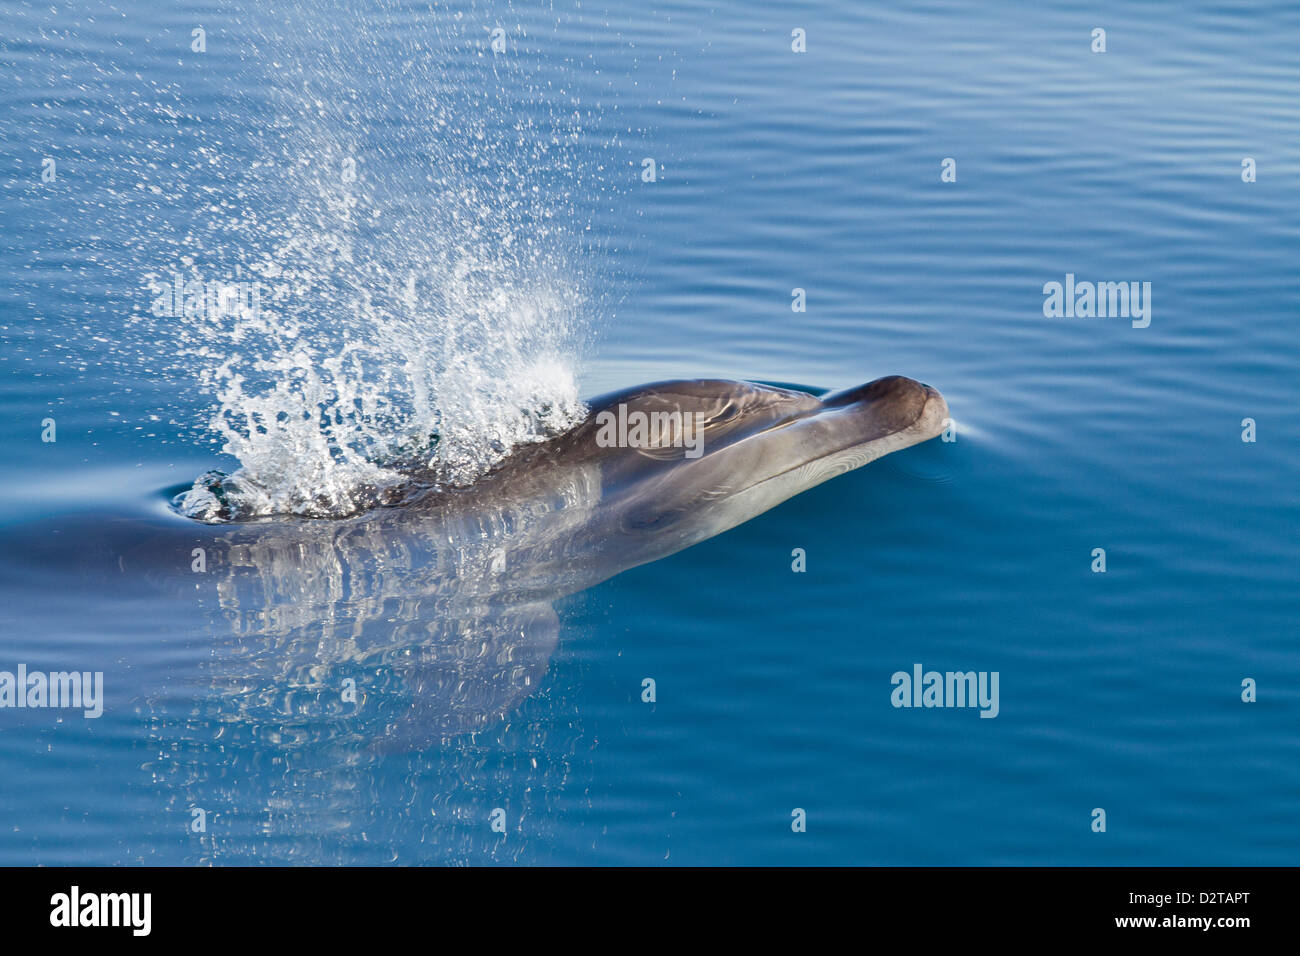 Bottlenose dolphin, Isla San Pedro Martir, Gulf of California (Sea of Cortez), Baja California Norte, Mexico Stock Photo